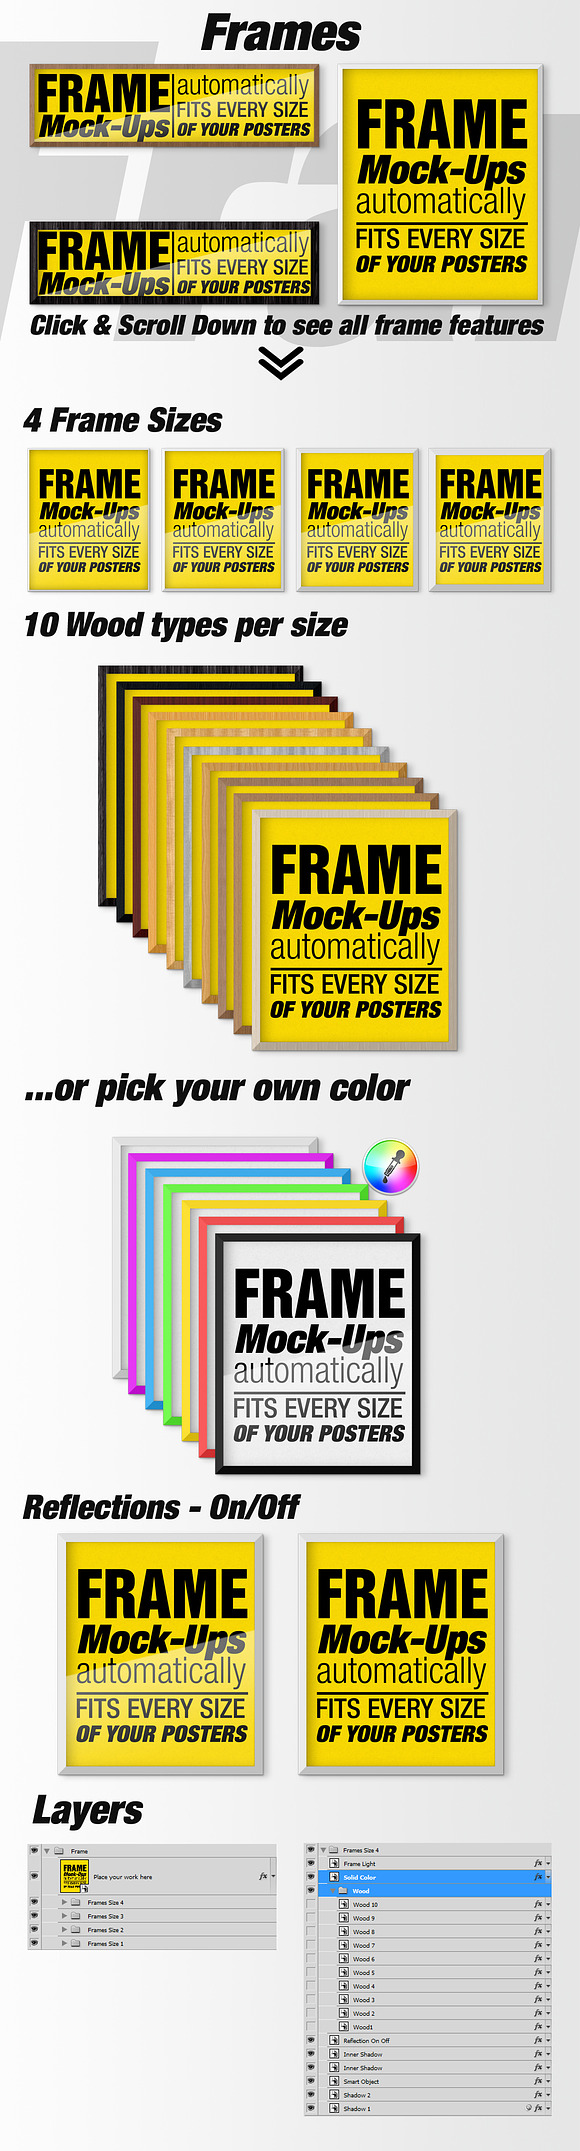 Canvas Mockups - Frames Mockups v 8 in Print Mockups - product preview 5